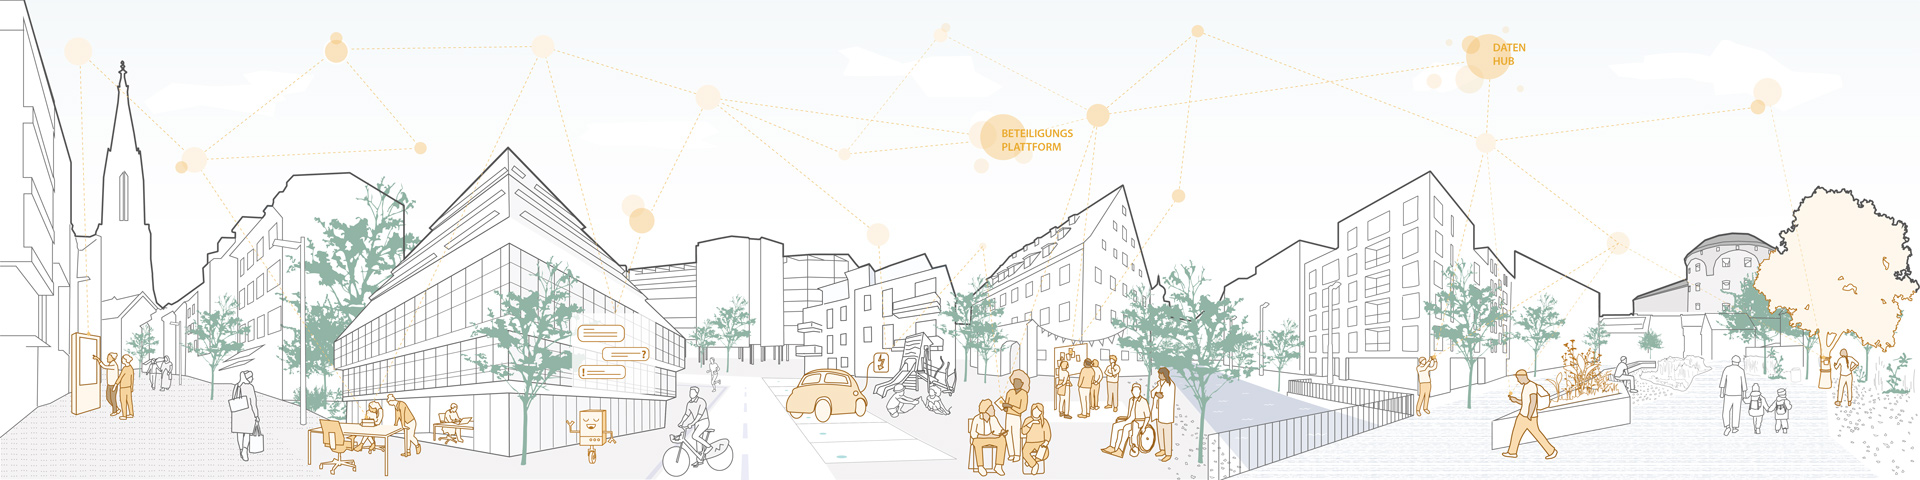 Illustration der Smart City Ulm